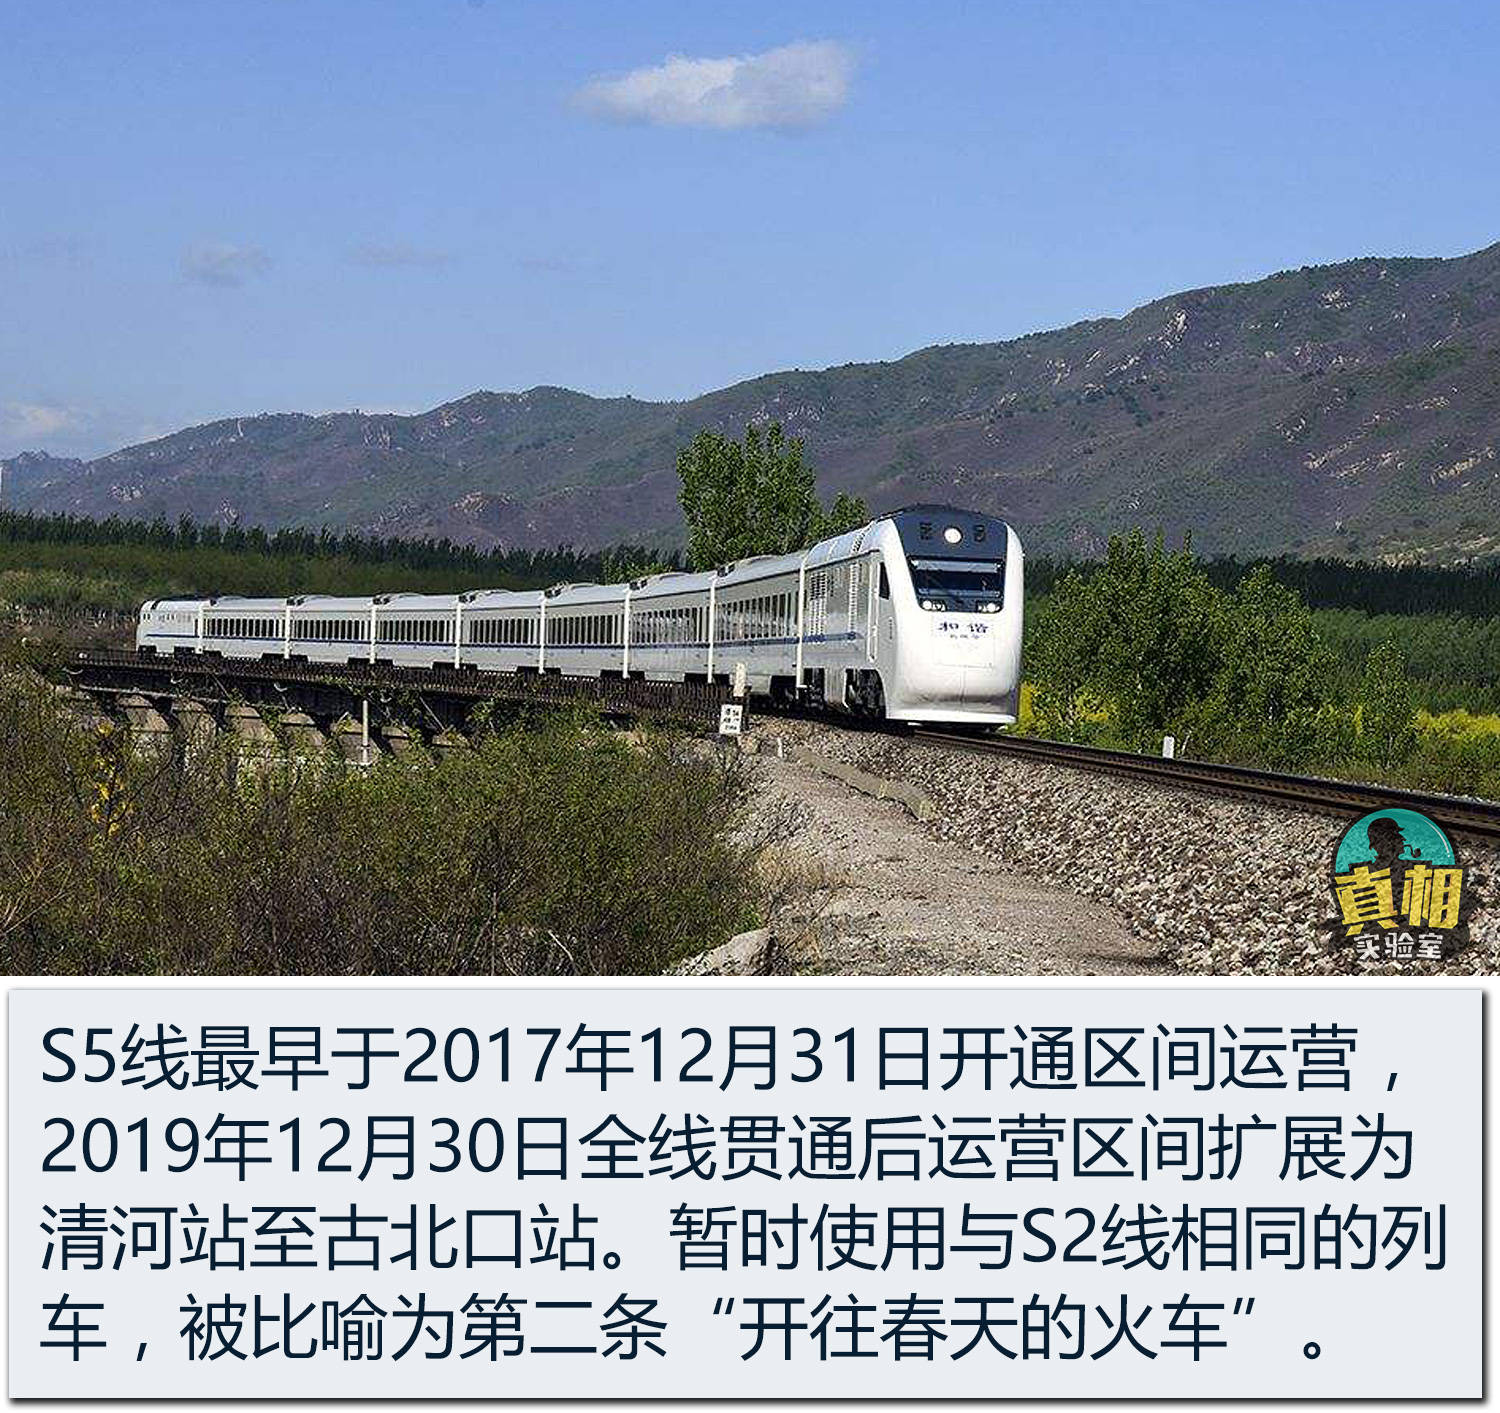 从线路走向来看,北京市郊铁路s5线将位于北京东北部的密云,怀柔两个